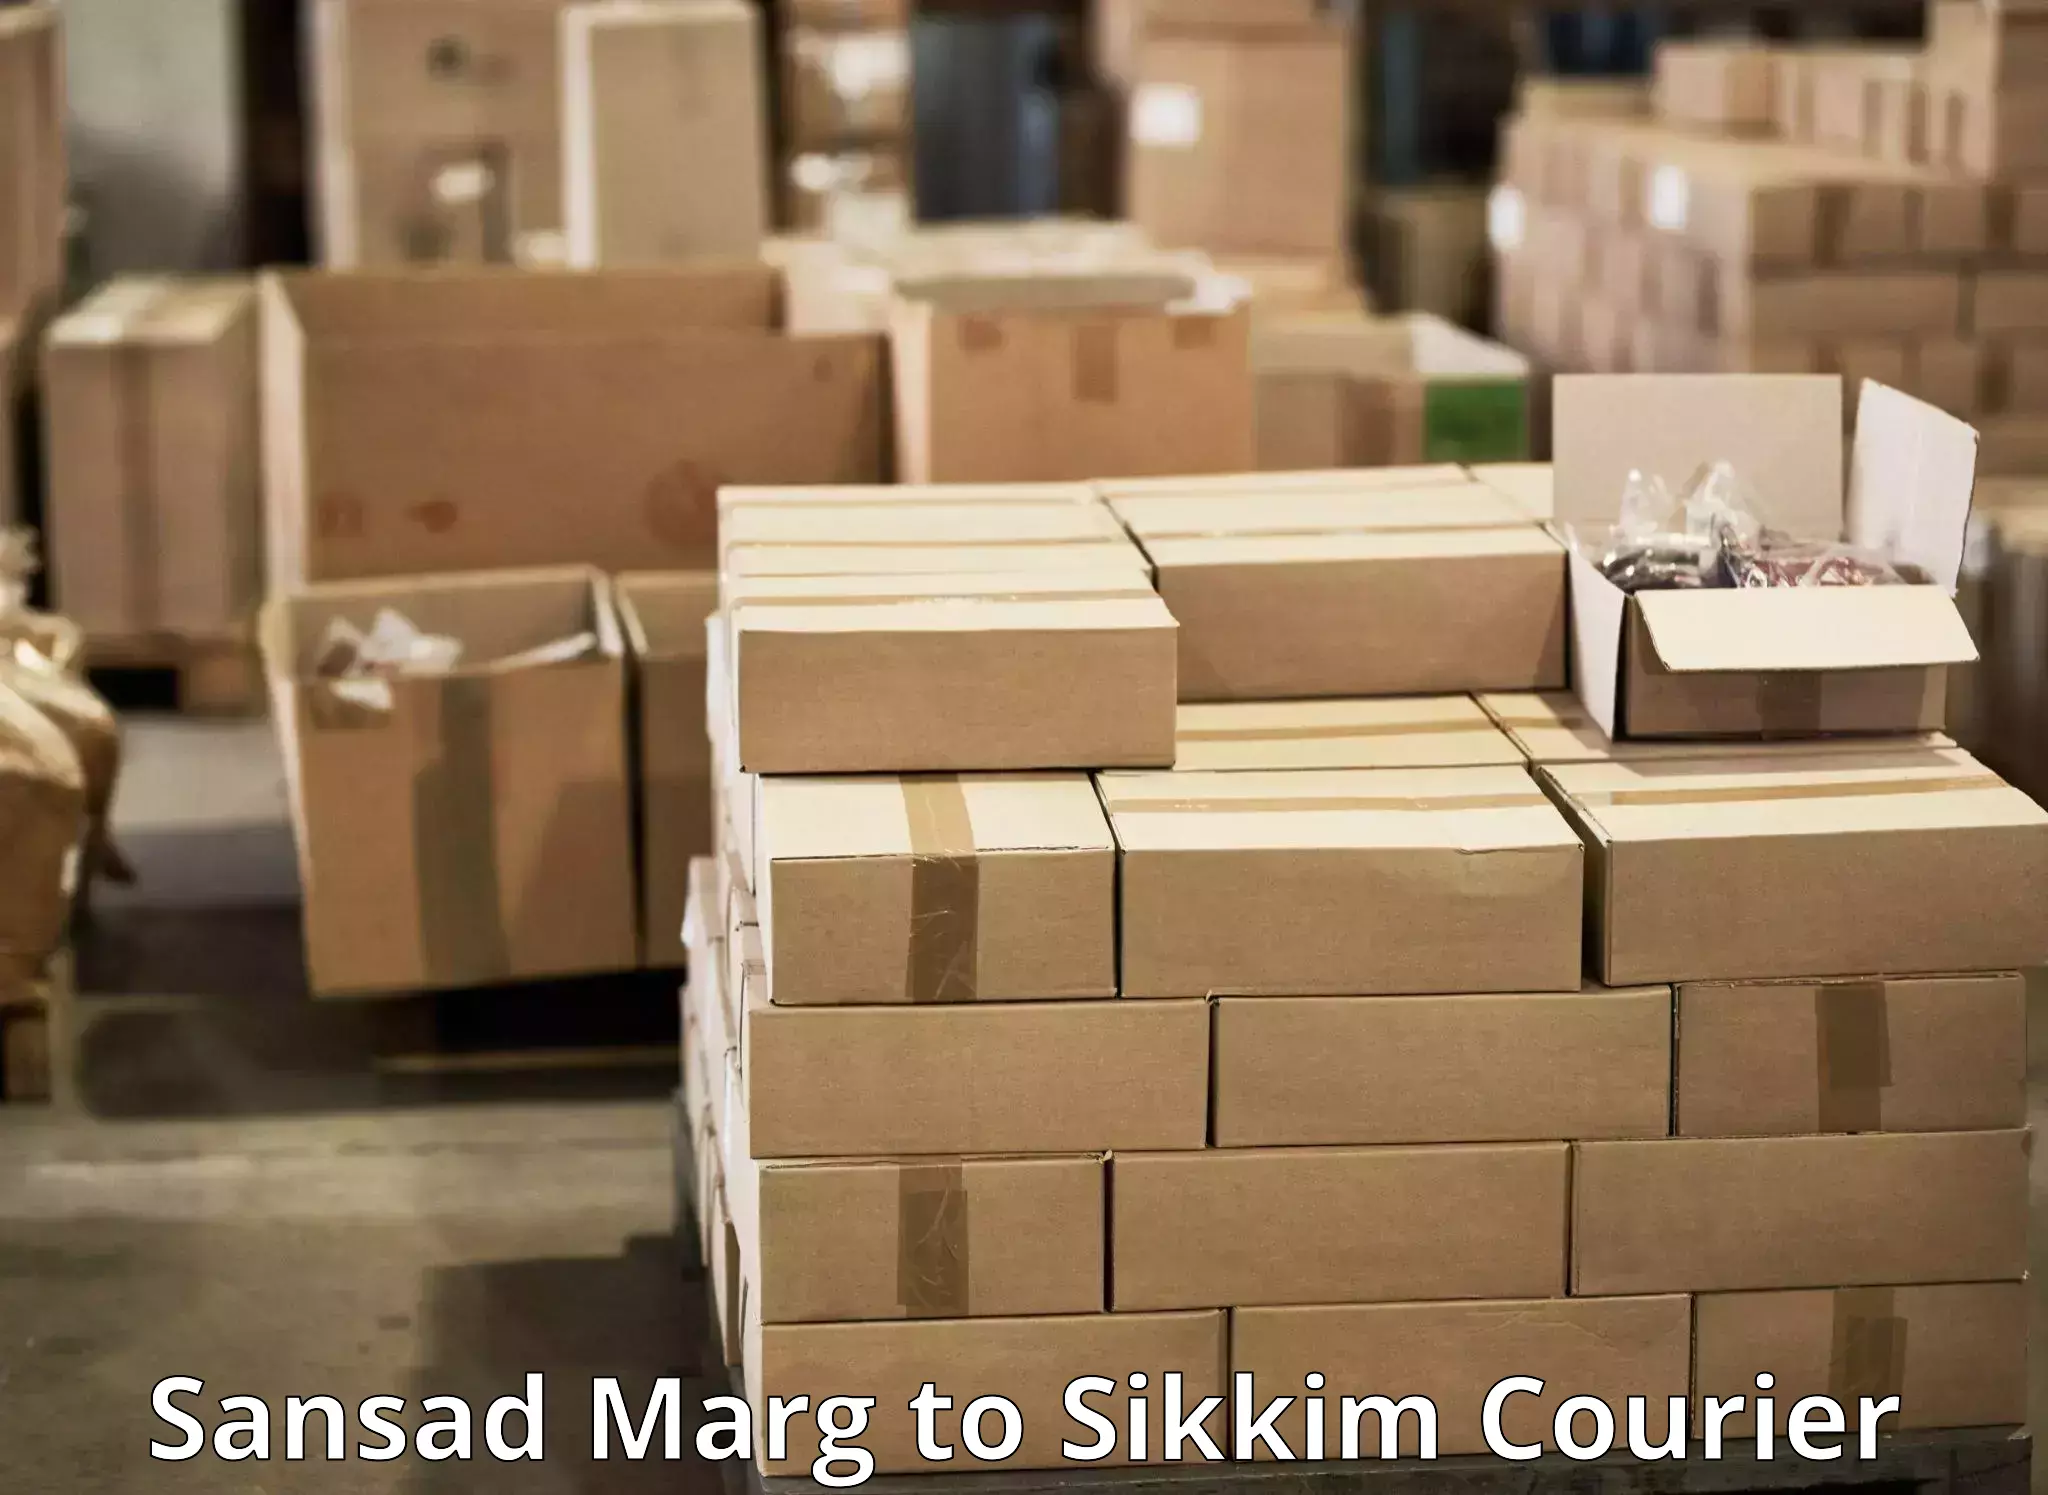 Door-to-door freight service Sansad Marg to South Sikkim